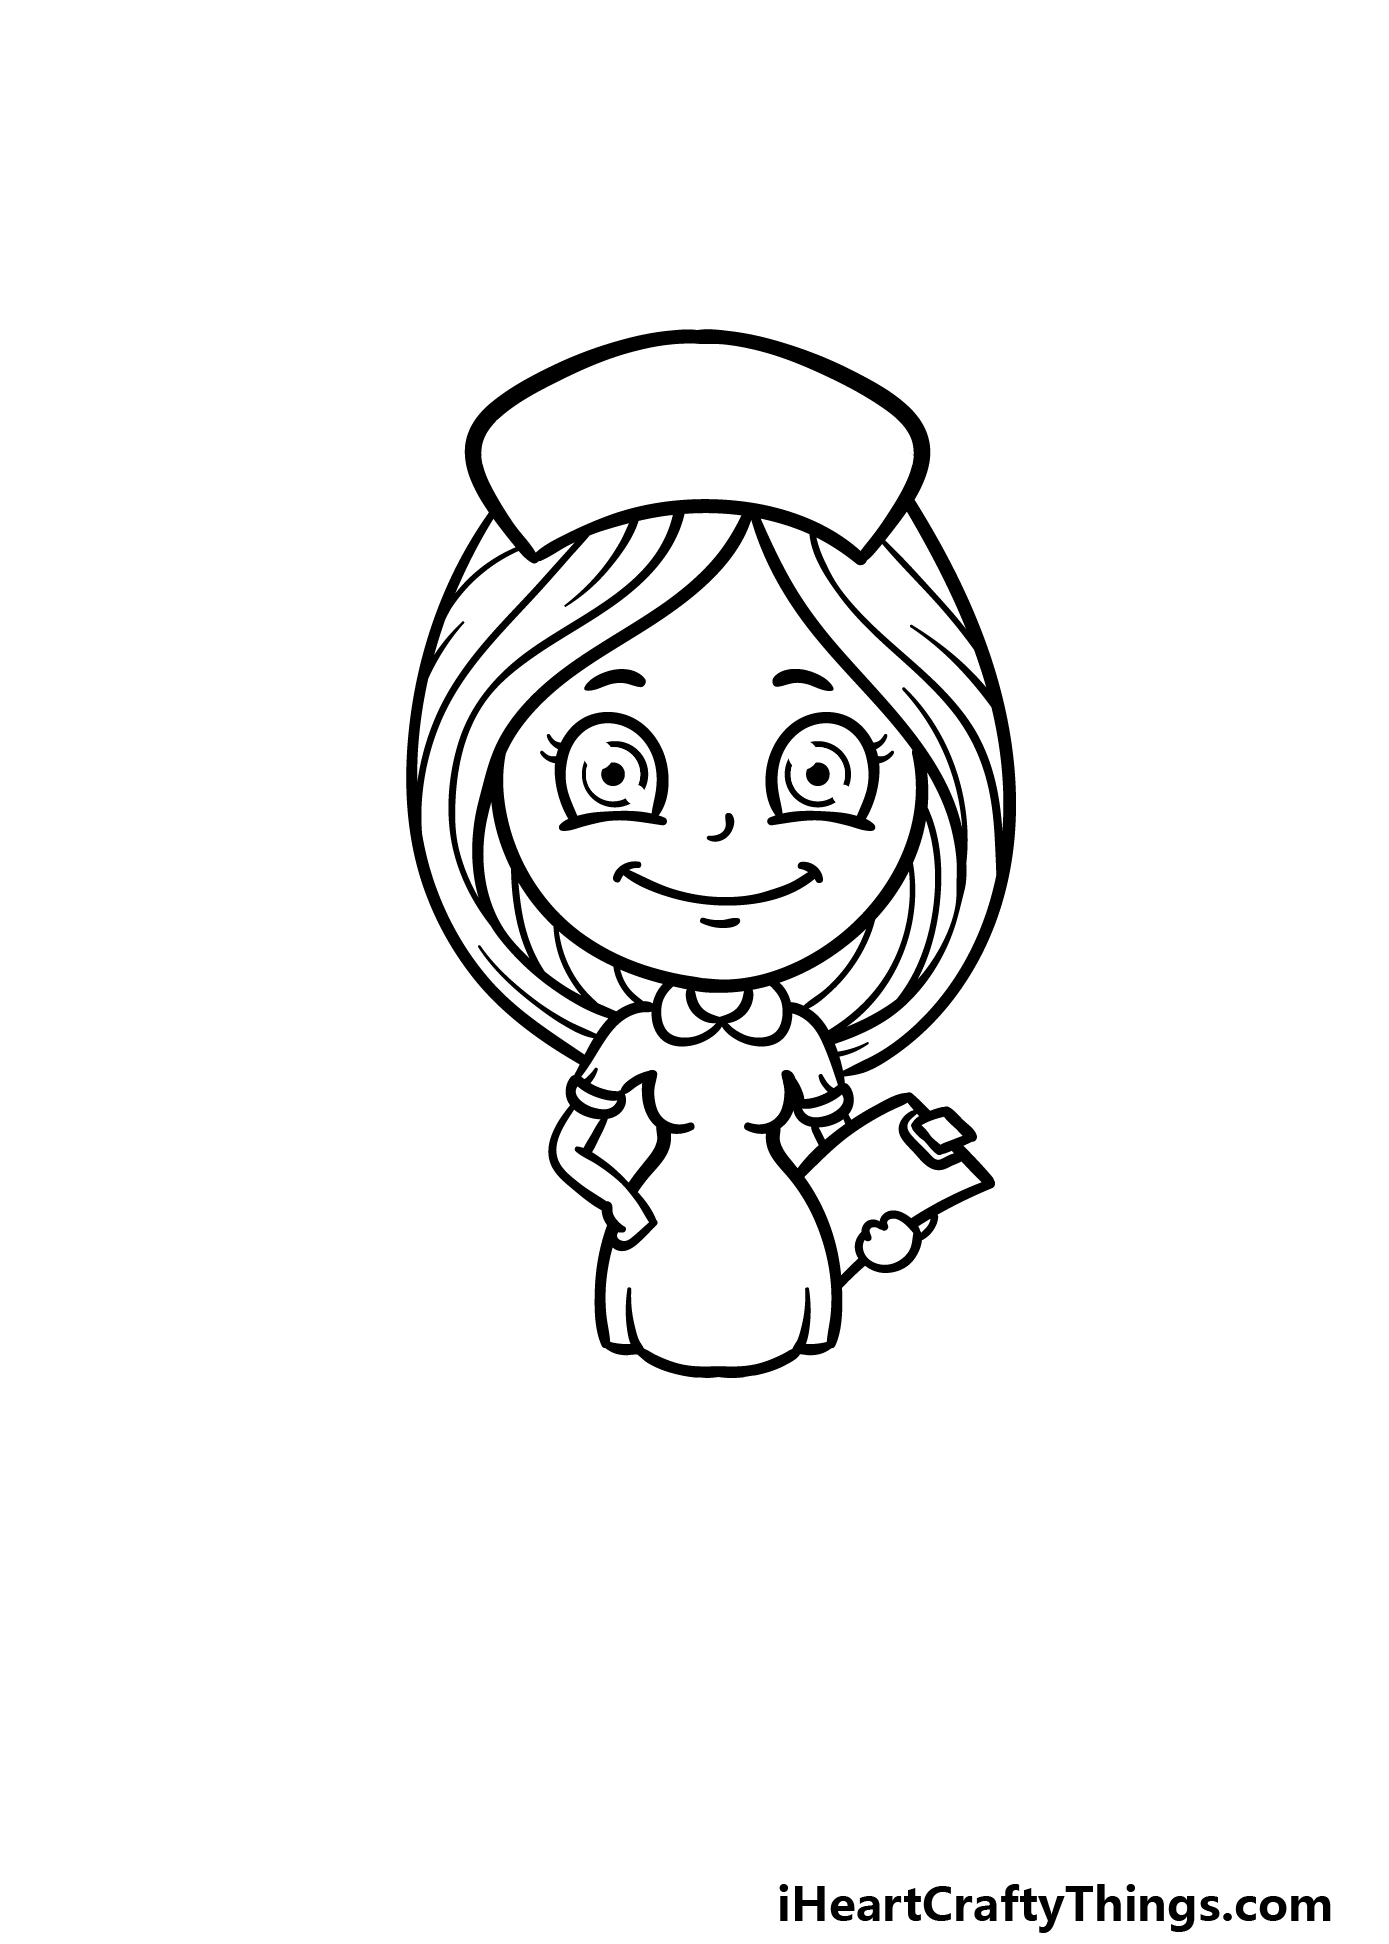 how to draw a cartoon nurse step 5